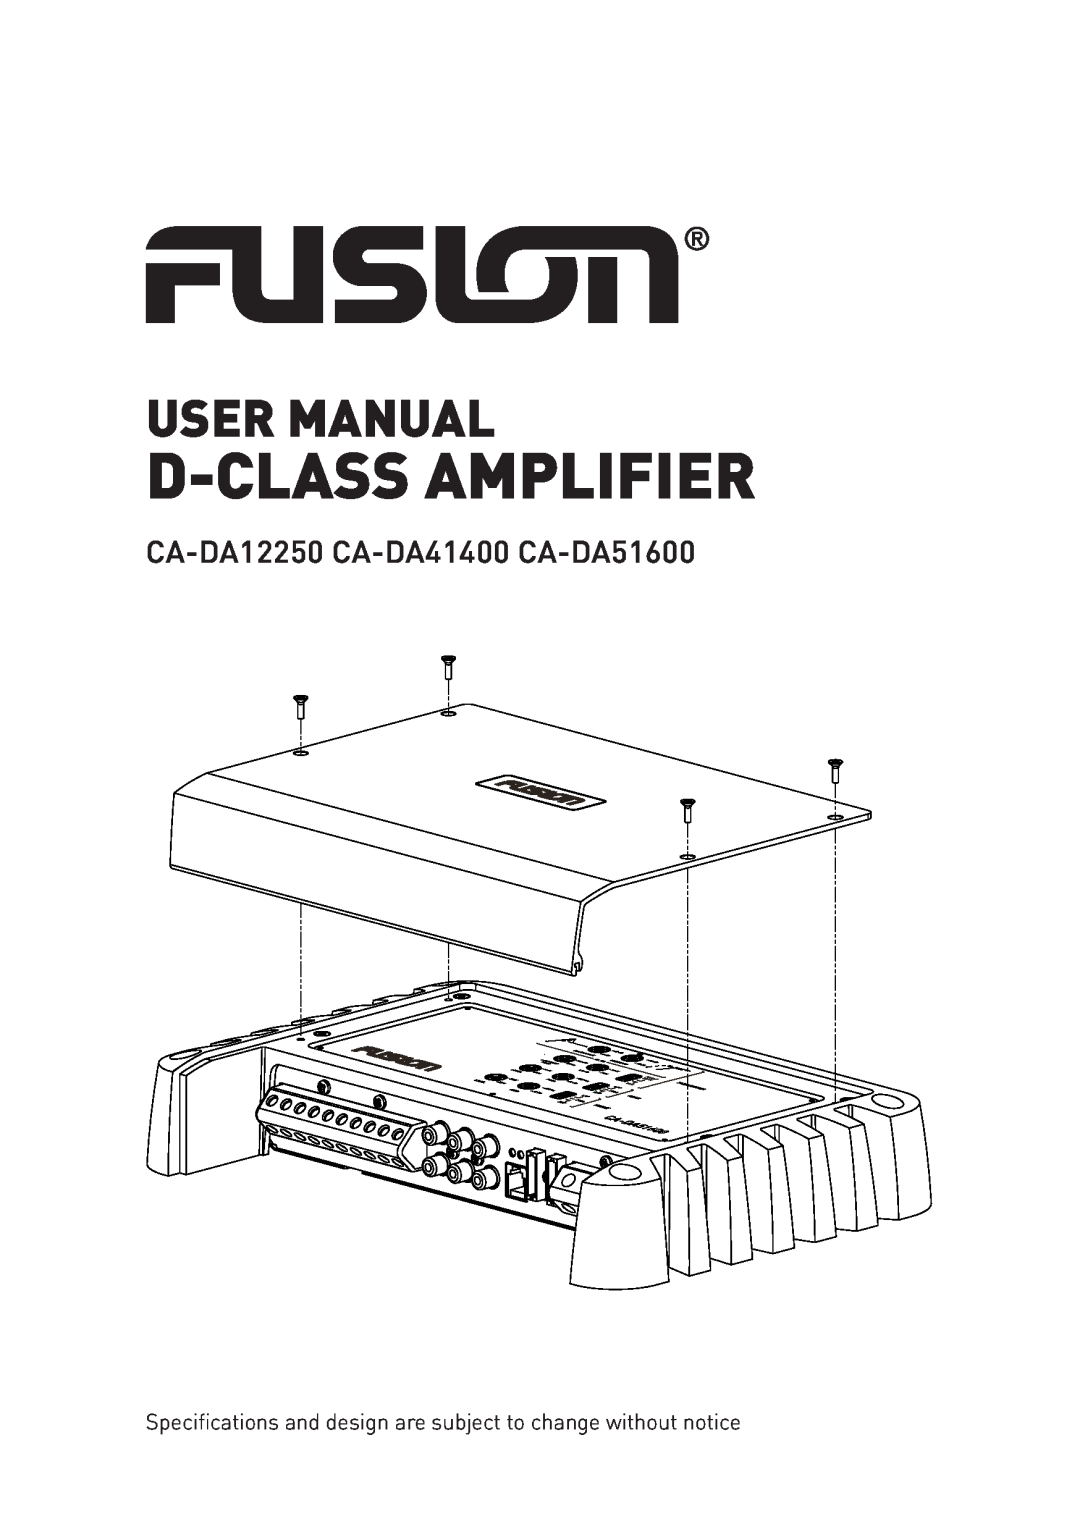 Fusion user manual D-Class Amplifier, User Manual, CA-DA12250 CA-DA41400 CA-DA51600 